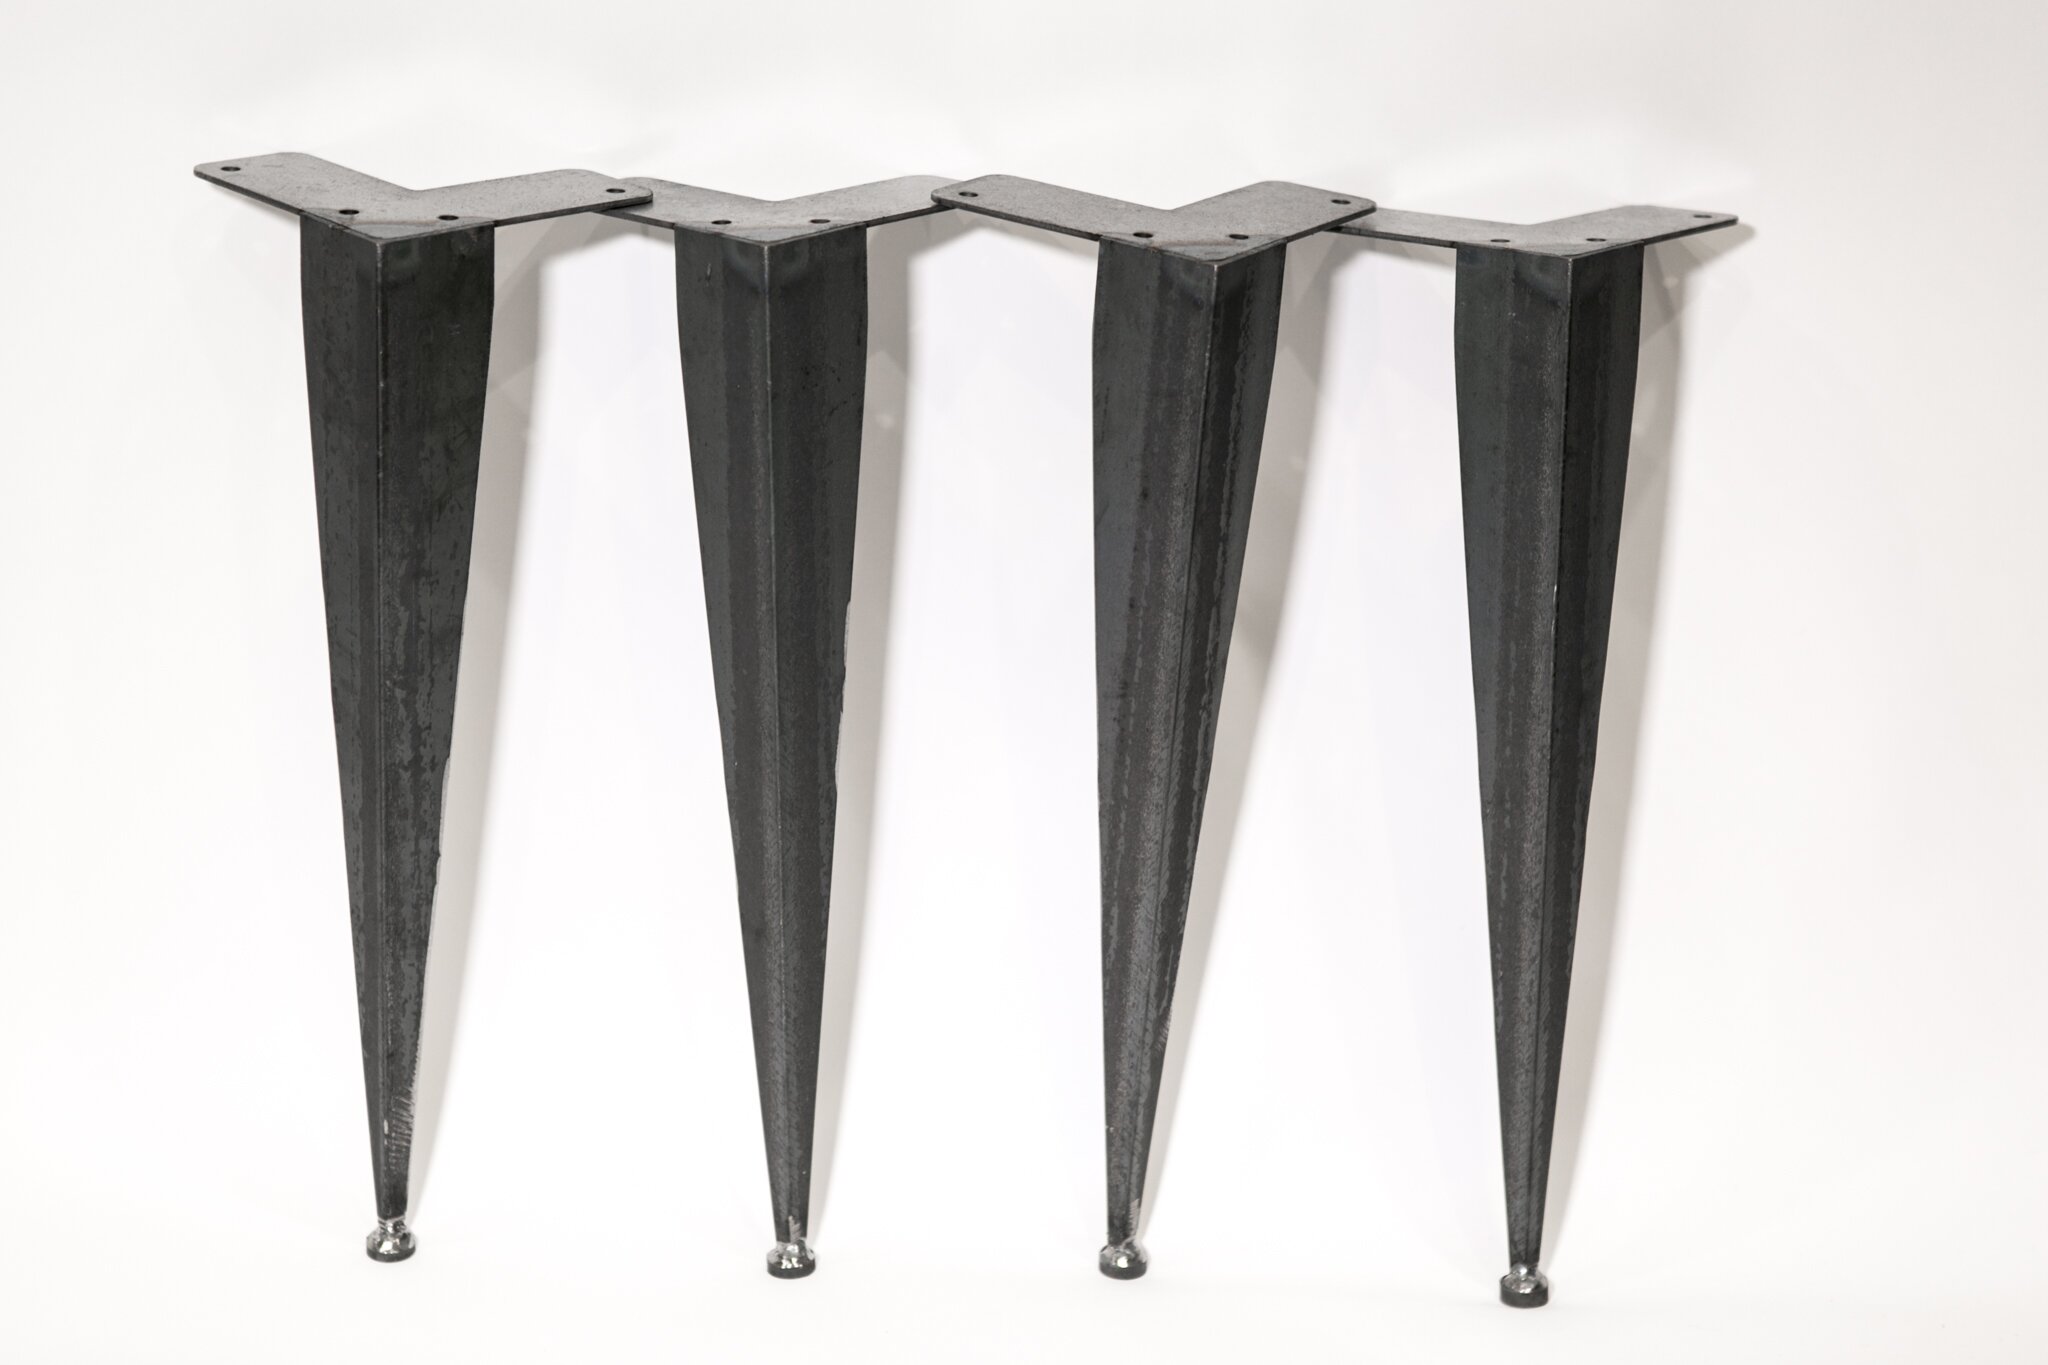 Work Bench Legs for Best Your Workspace Furniture Design: Heavy Duty Work Benches | Kobalt Work Benches | Work Bench Legs